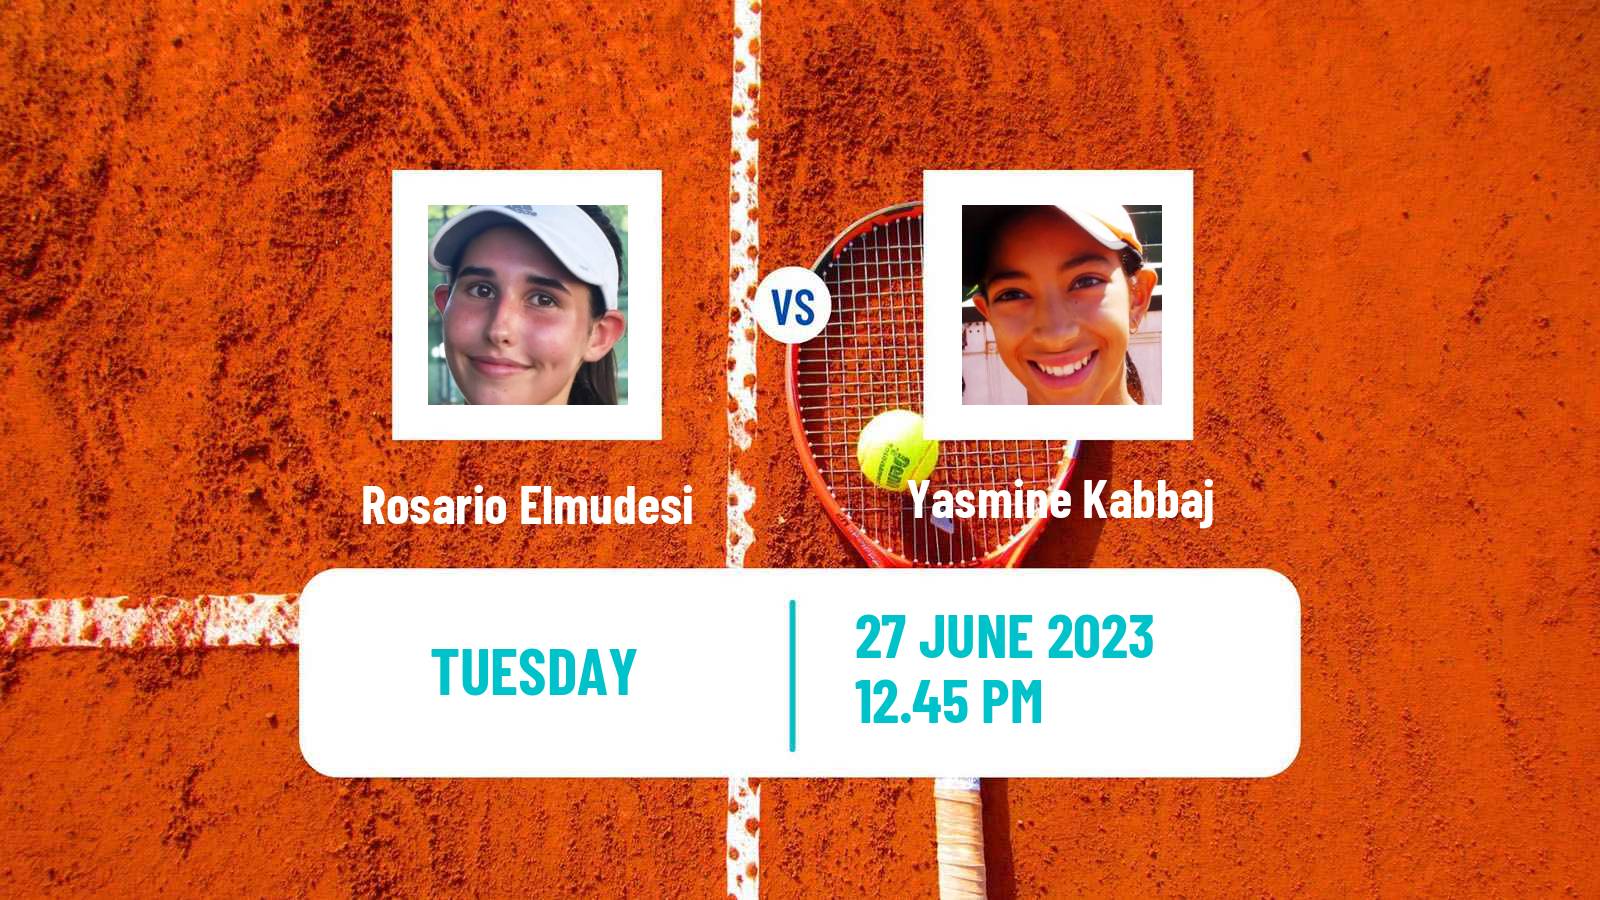 Tennis ITF W25 Santo Domingo 4 Women Rosario Elmudesi - Yasmine Kabbaj